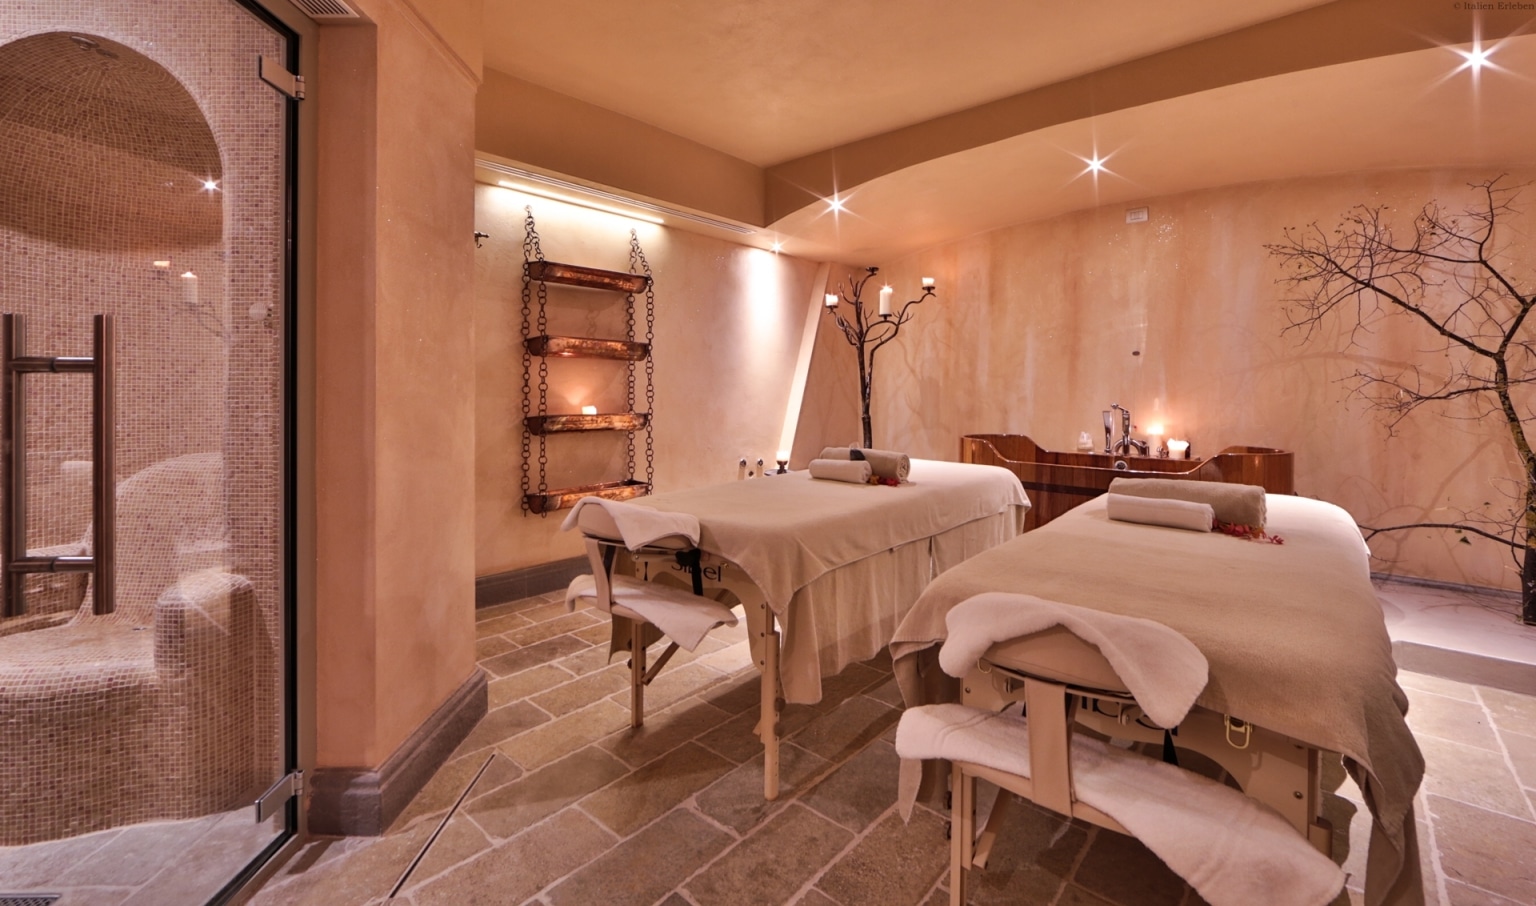 Toskana Florenz Hotel Ville sull'Arno direkt Arno Fluss nahe Altstadt historisch Stadtrand gut erreichbar Wellness Massage